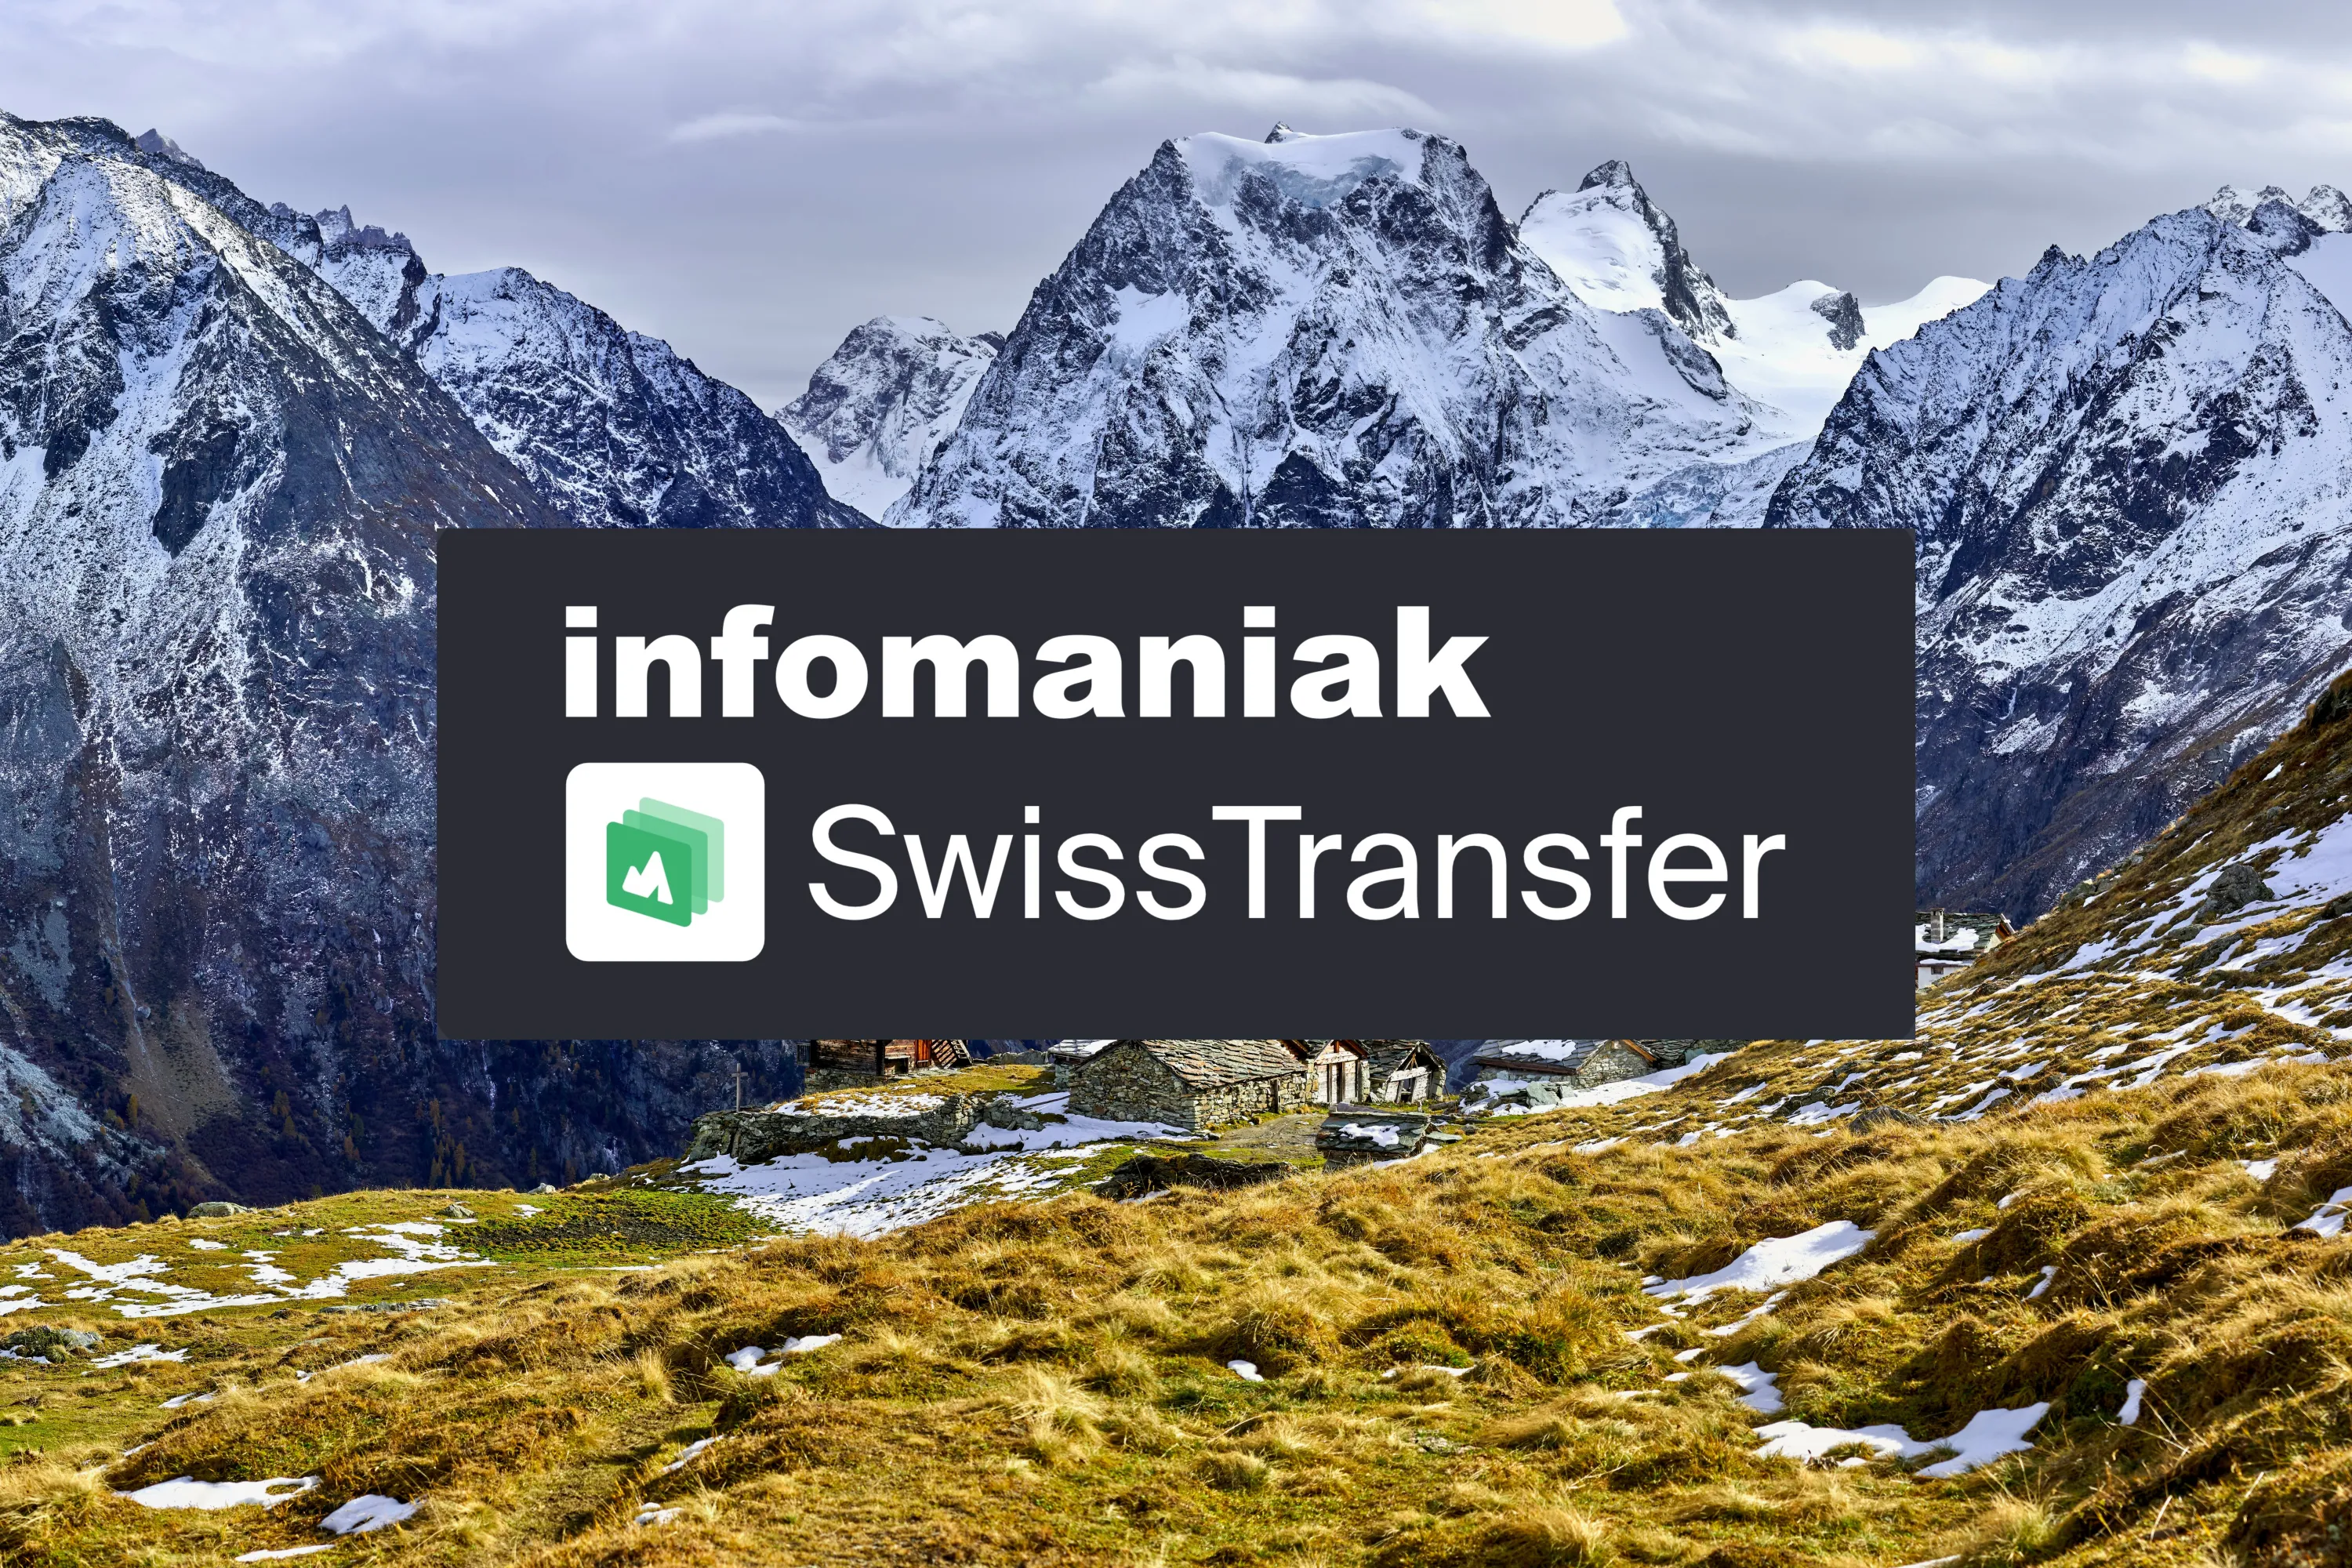 Infomaniak SwissTransfer